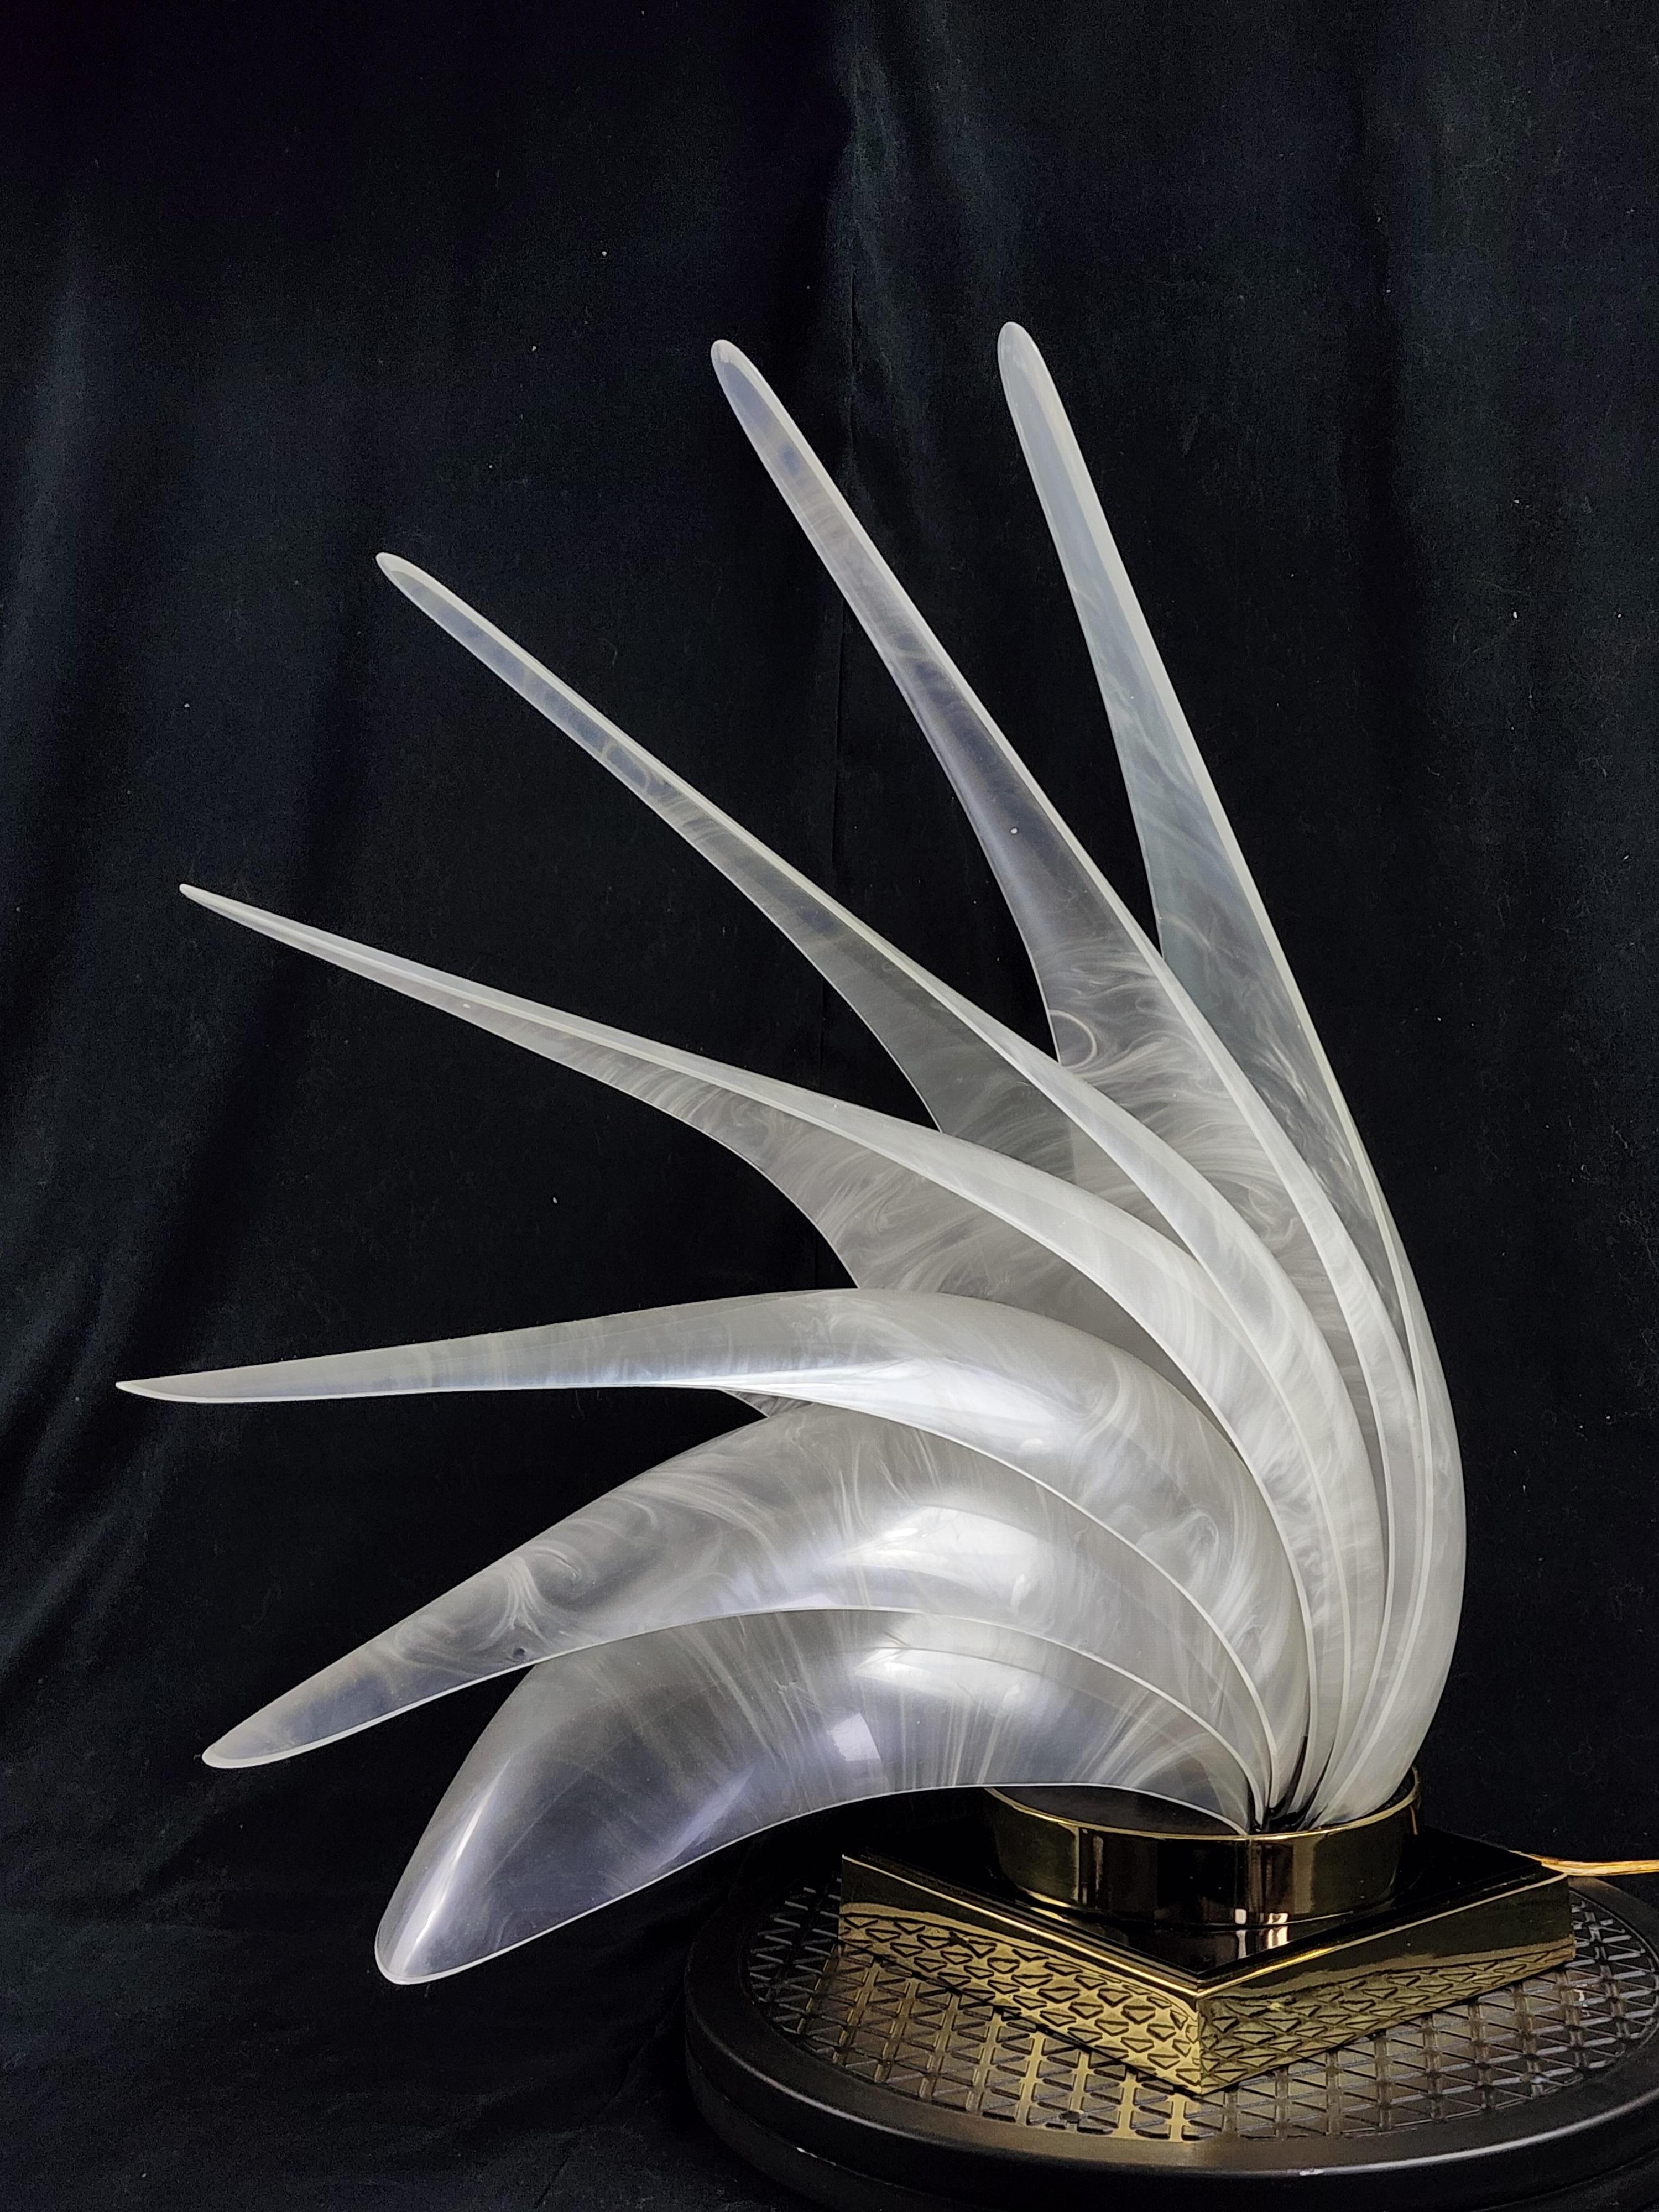 Lampe de table iconique 'Bird of Paradise' de Roger Rougier, Canada. 

Elegant éventail sculptural de coquillages en acrylique finition perle assis sur une épaisse base en laiton . 

Contient une douille céramique E26 de 40 watts. 

.